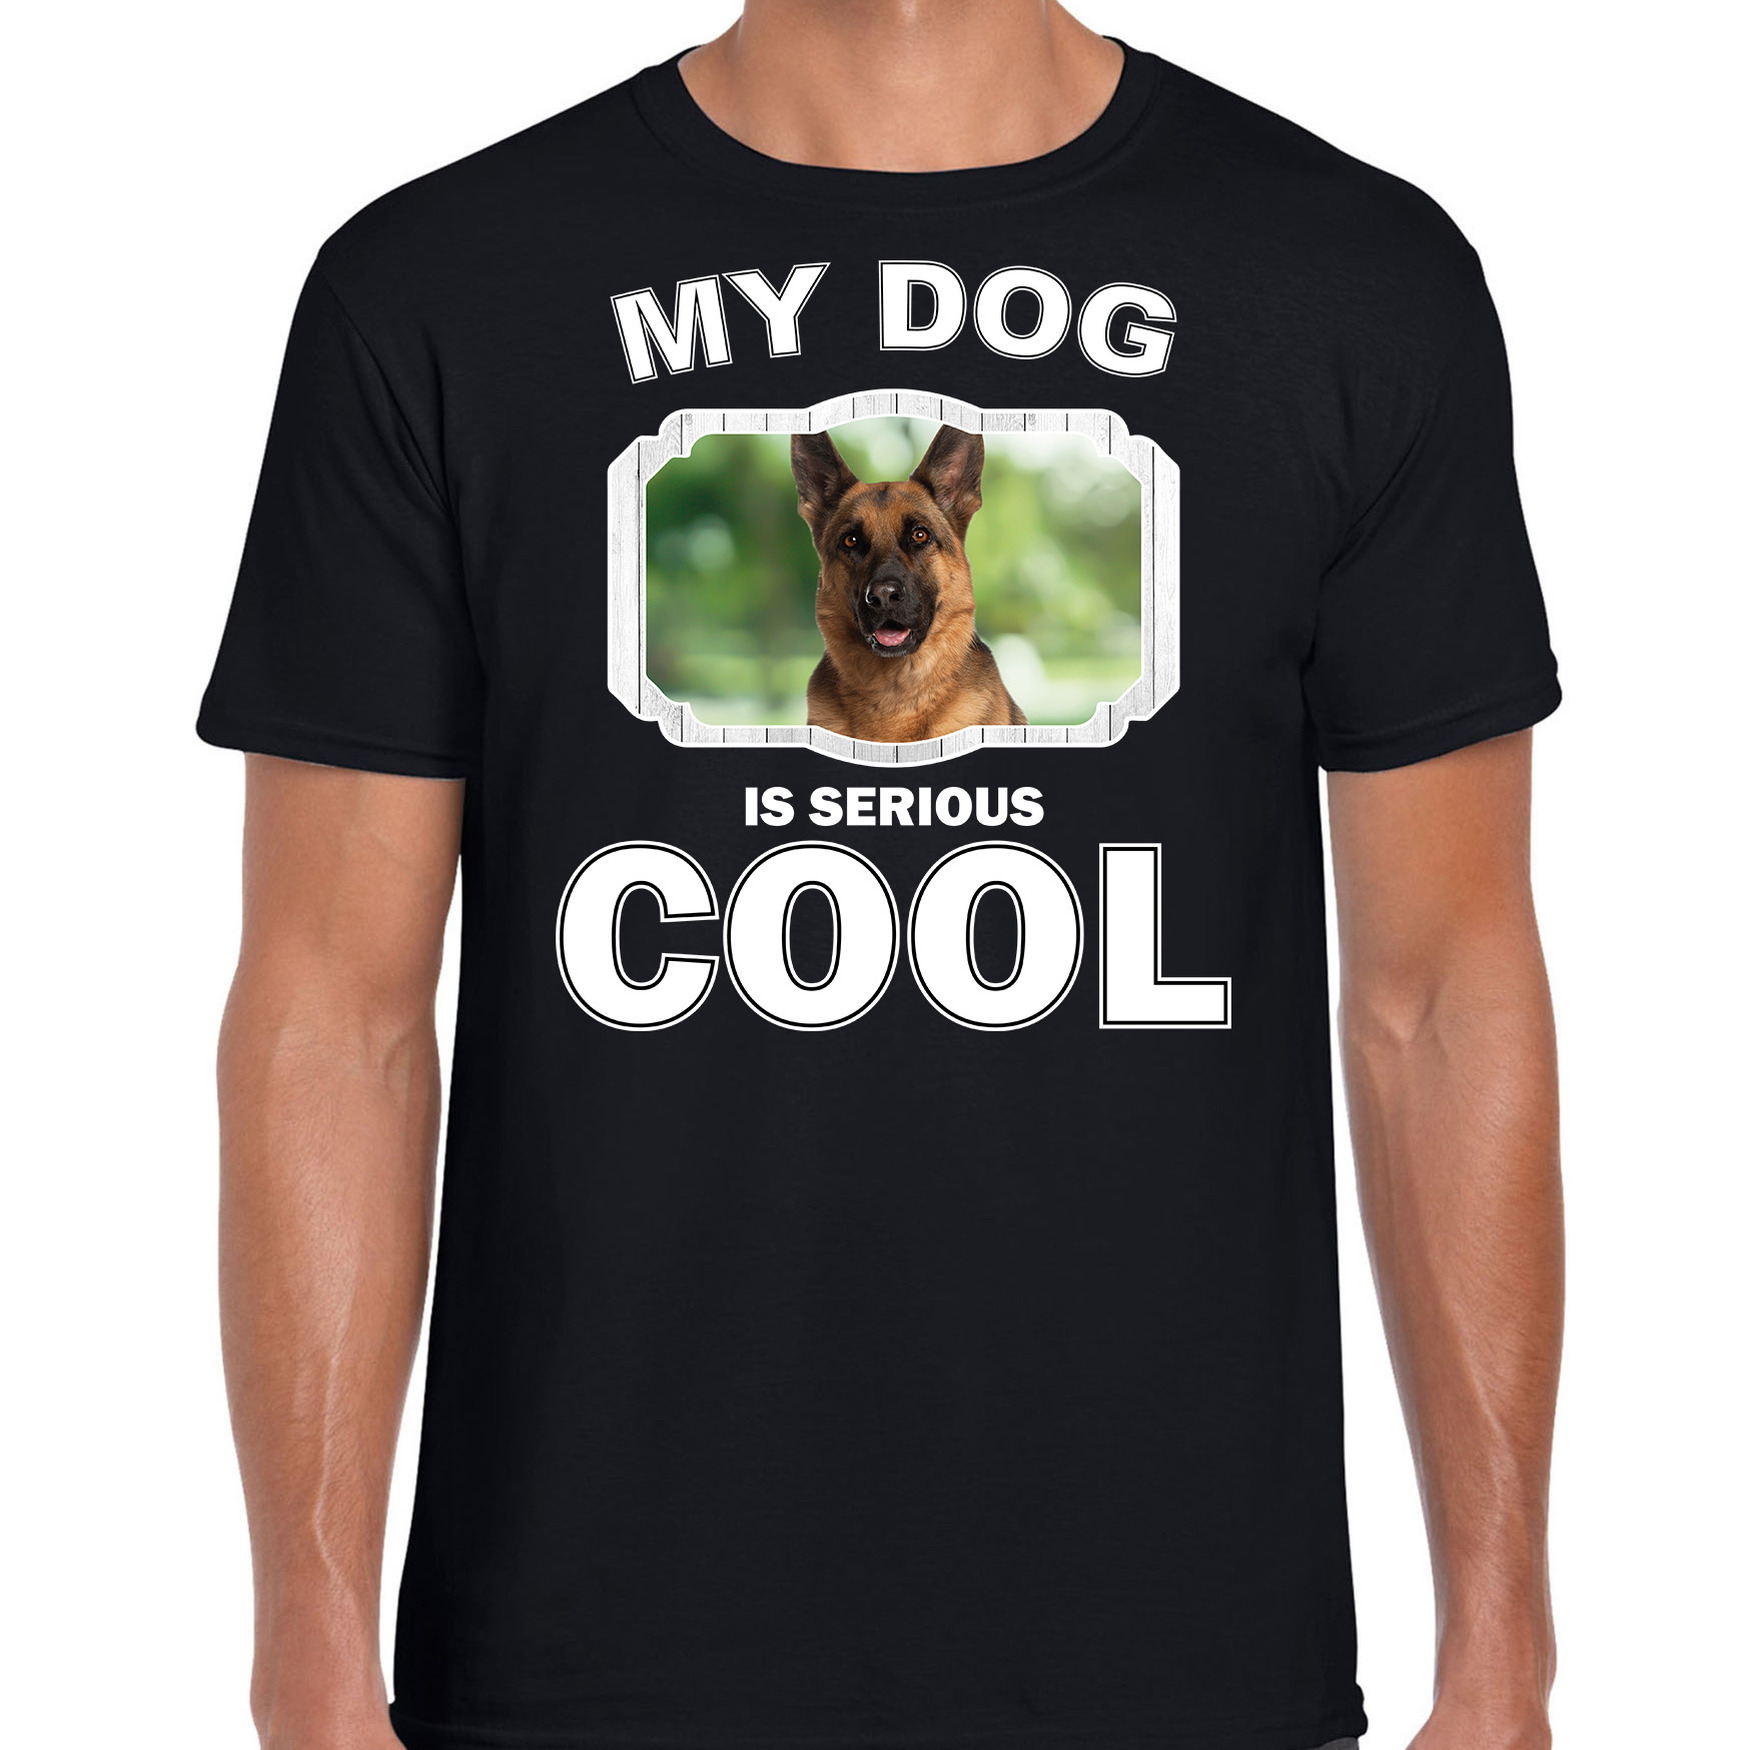 Honden liefhebber shirt Duitse herder my dog is serious cool zwart voor heren